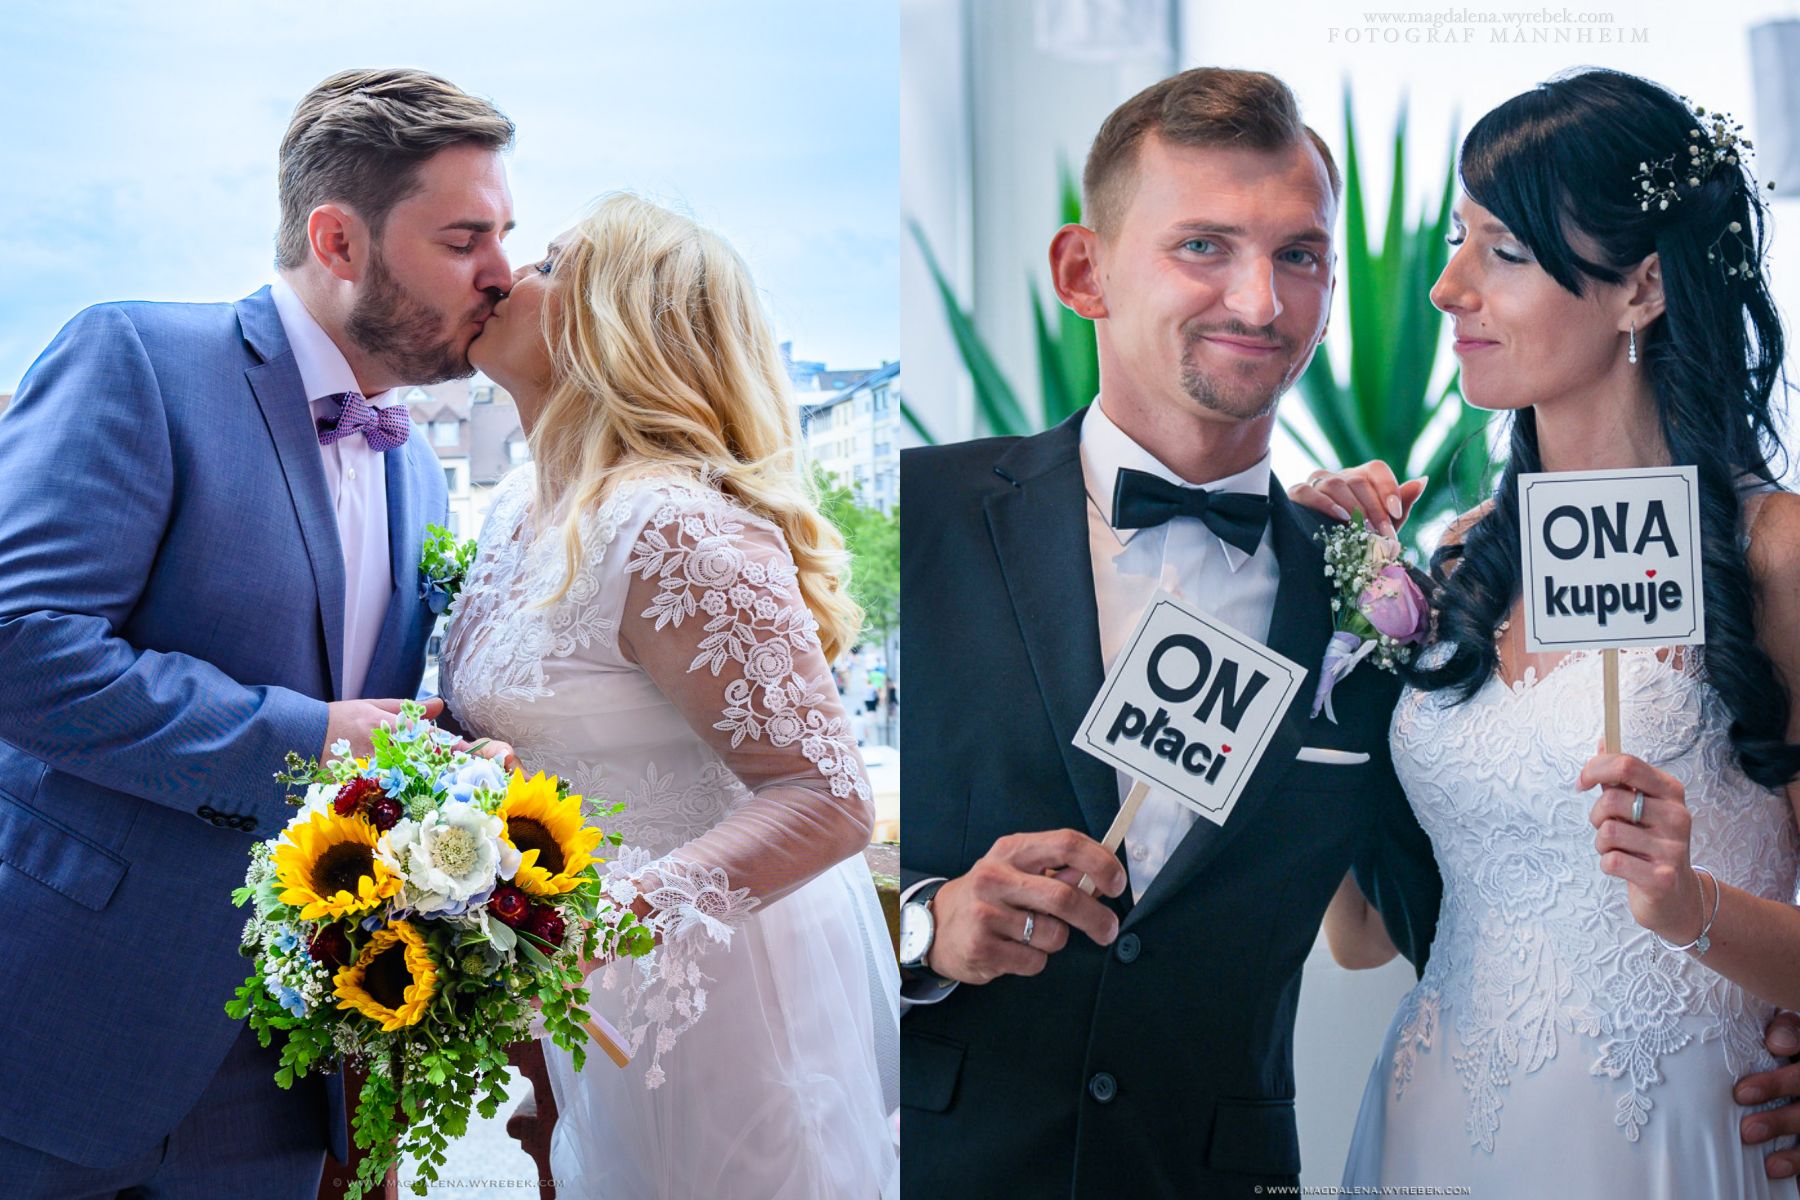 Fotoreportaże Okolicznościowe Sesje Ślubne Ślub – Hochzeit – Fotoshooting – Polnische Fotografin Mannheim Ślub Magdalena Wyrębek